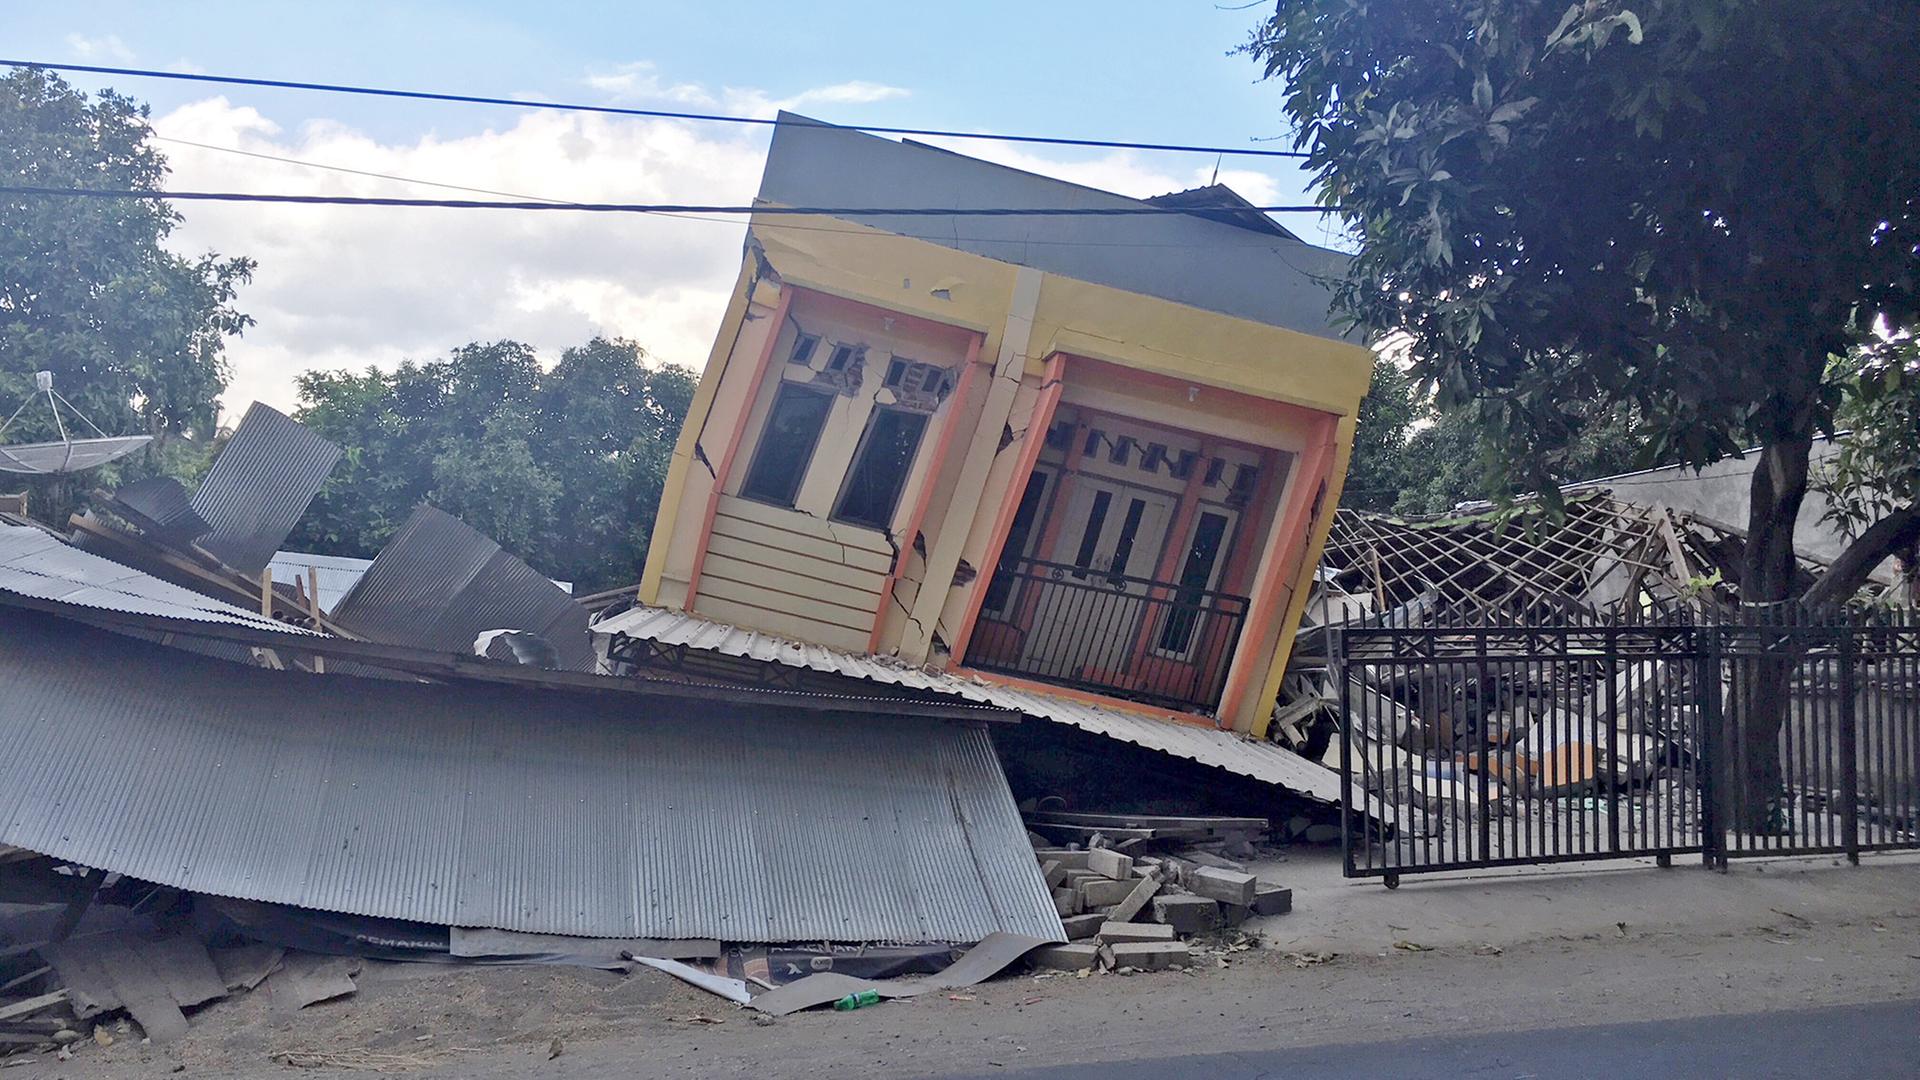 Zerstörte Häuser in Karang Pasor (Indonesien), aufgenommen am 12.08.2018